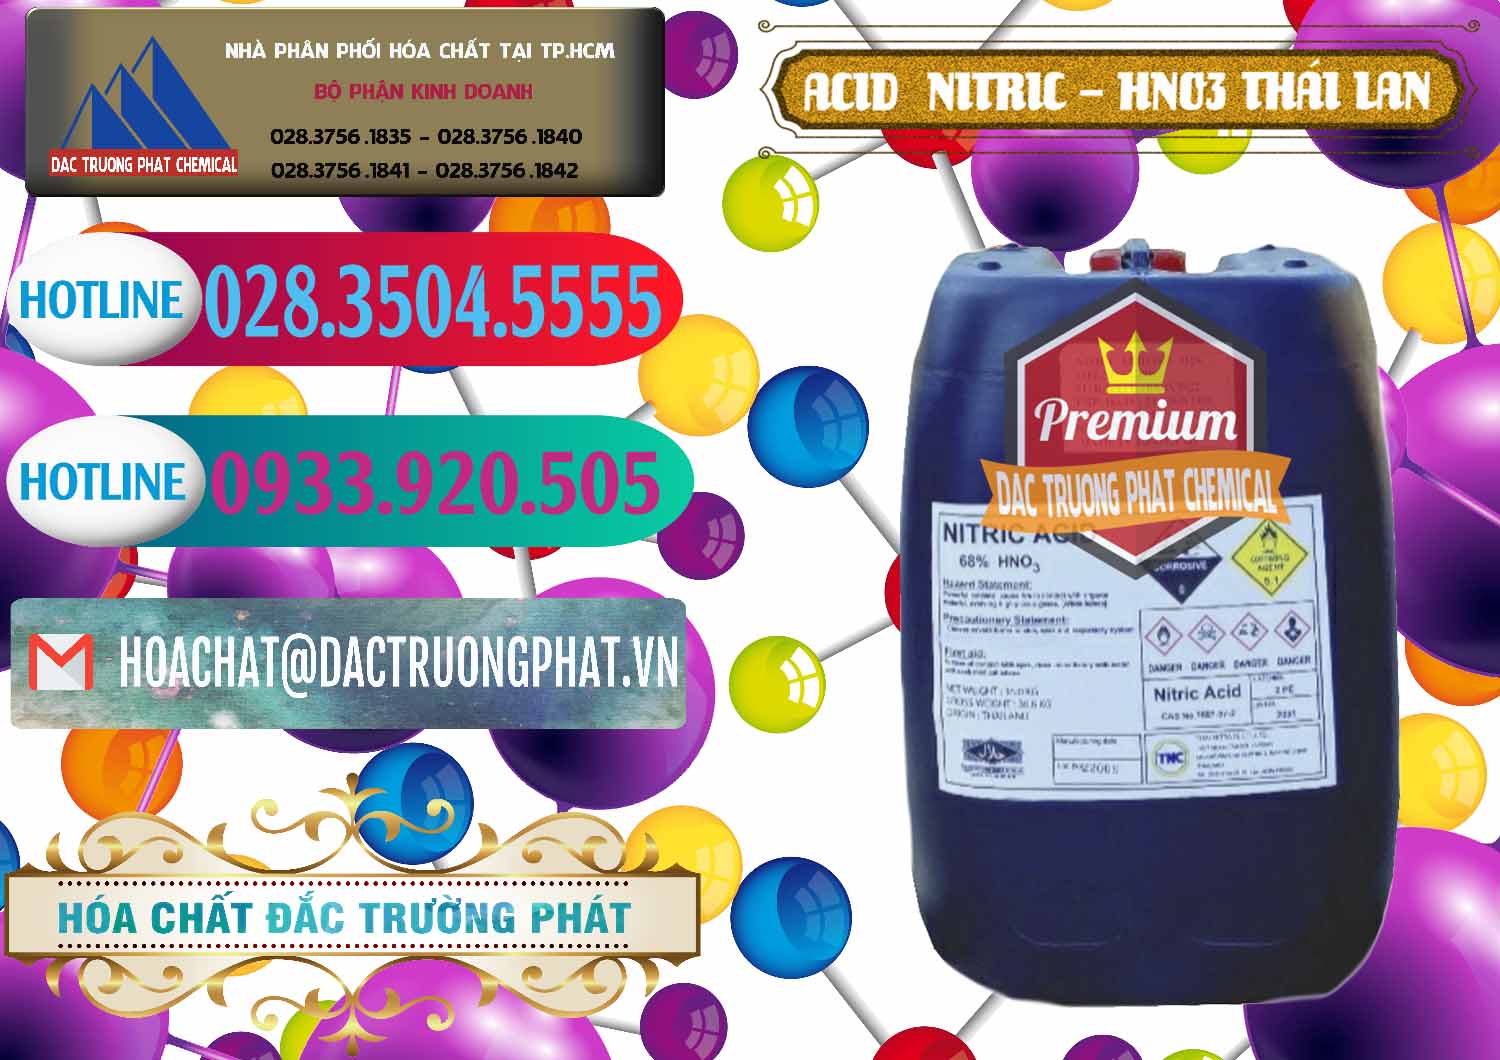 Công ty chuyên cung ứng & bán Acid Nitric – Axit Nitric HNO3 Thái Lan Thailand - 0344 - Đơn vị chuyên kinh doanh ( phân phối ) hóa chất tại TP.HCM - truongphat.vn